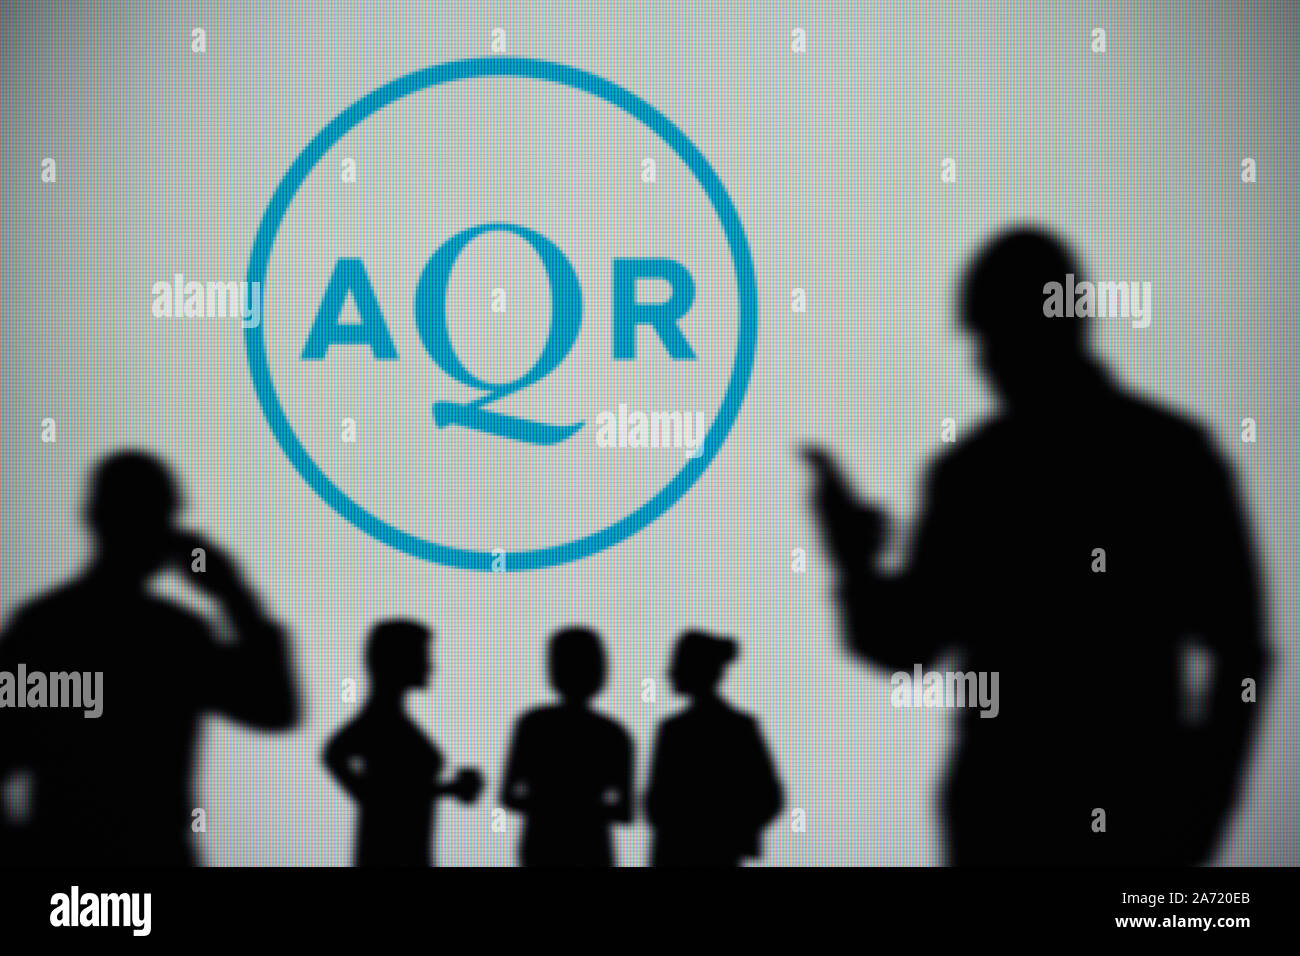 Die aqr Capital Management Logo ist auf einen LED-Bildschirm im Hintergrund, während eine Silhouette Person ein Smartphone verwendet (nur redaktionelle Nutzung) Stockfoto